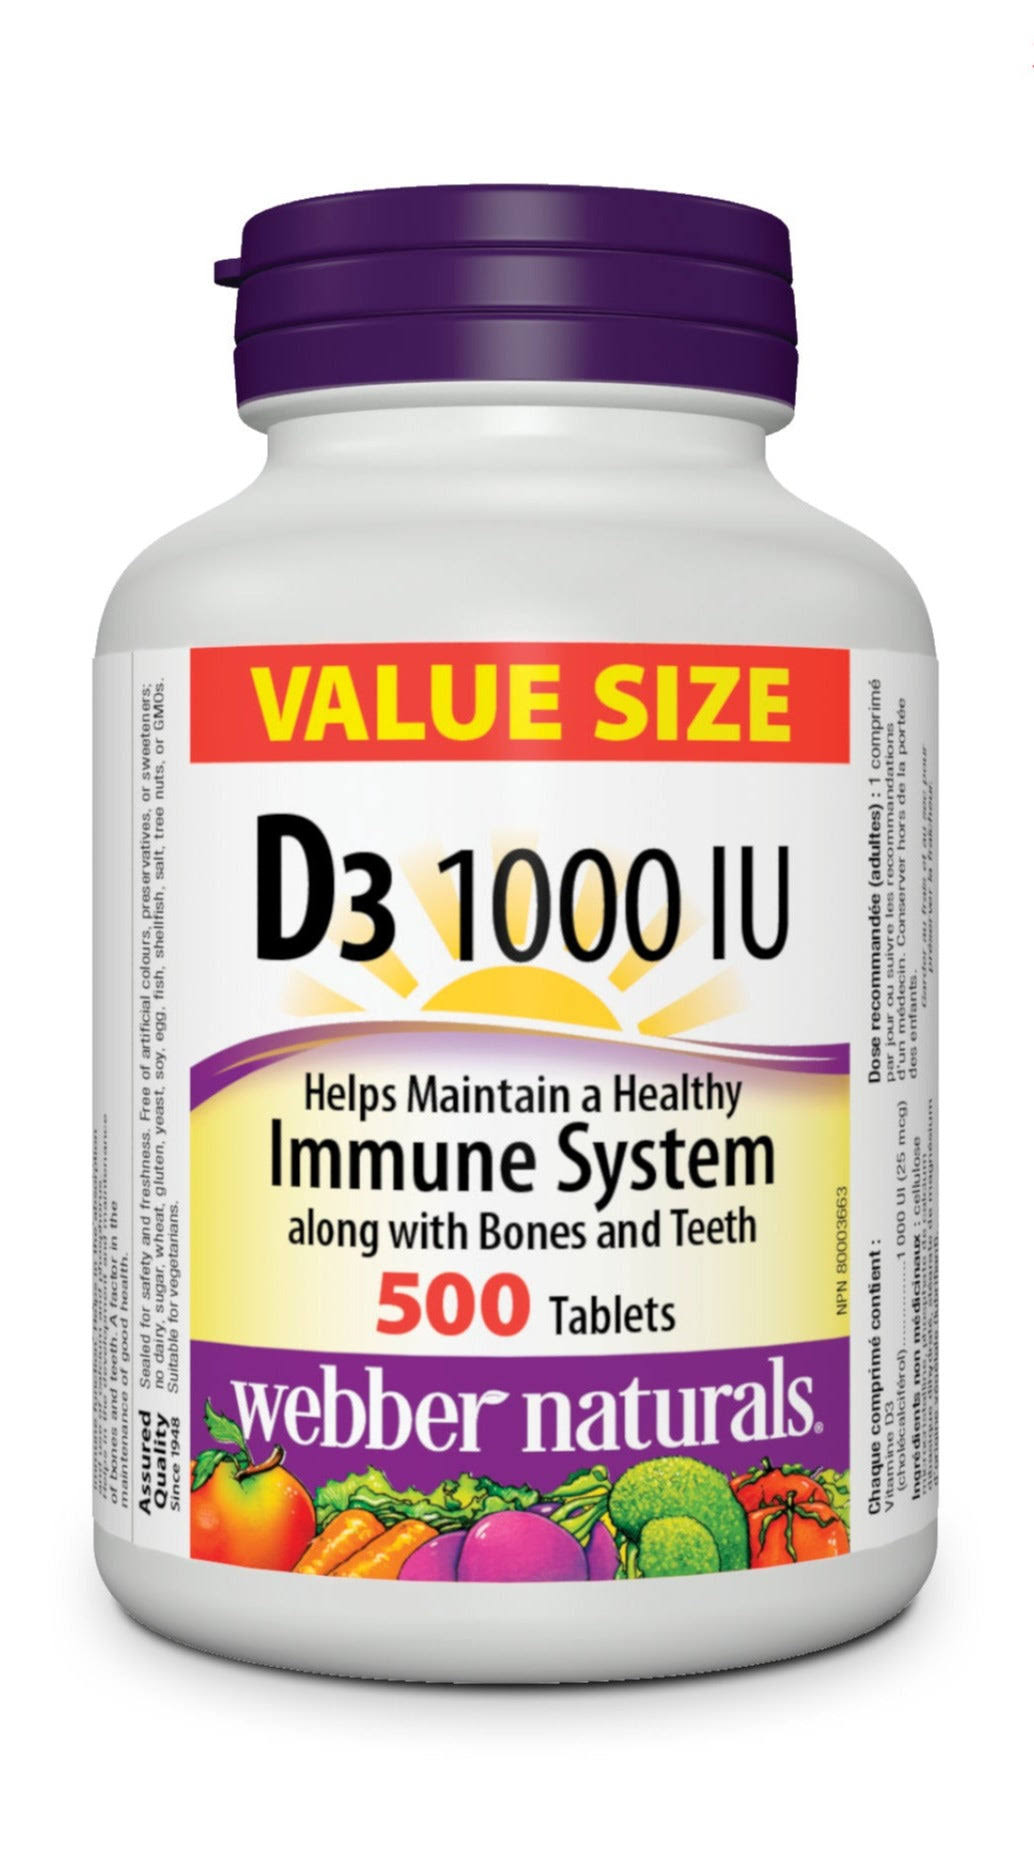 Webber Naturals Vitamin D3 1000 IU Tablets, 500 Tablets